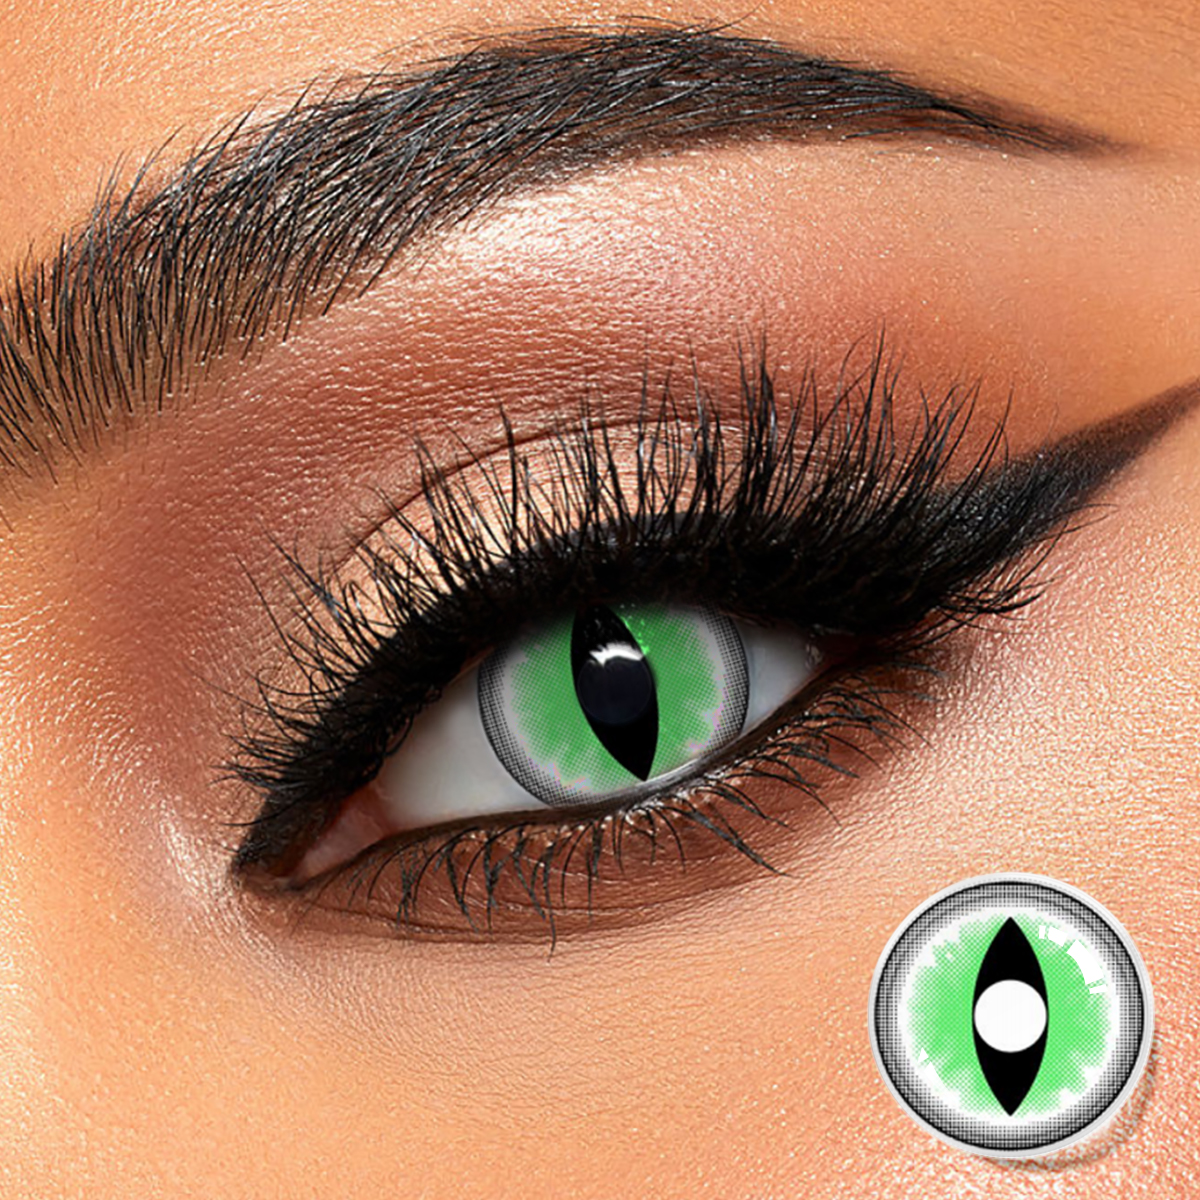 CE ISO fabrika doğrudan toptan ucuz fiyat DBeyes süper doğal renkli kontakt kozmetik yeşil renkli kontakt lensler